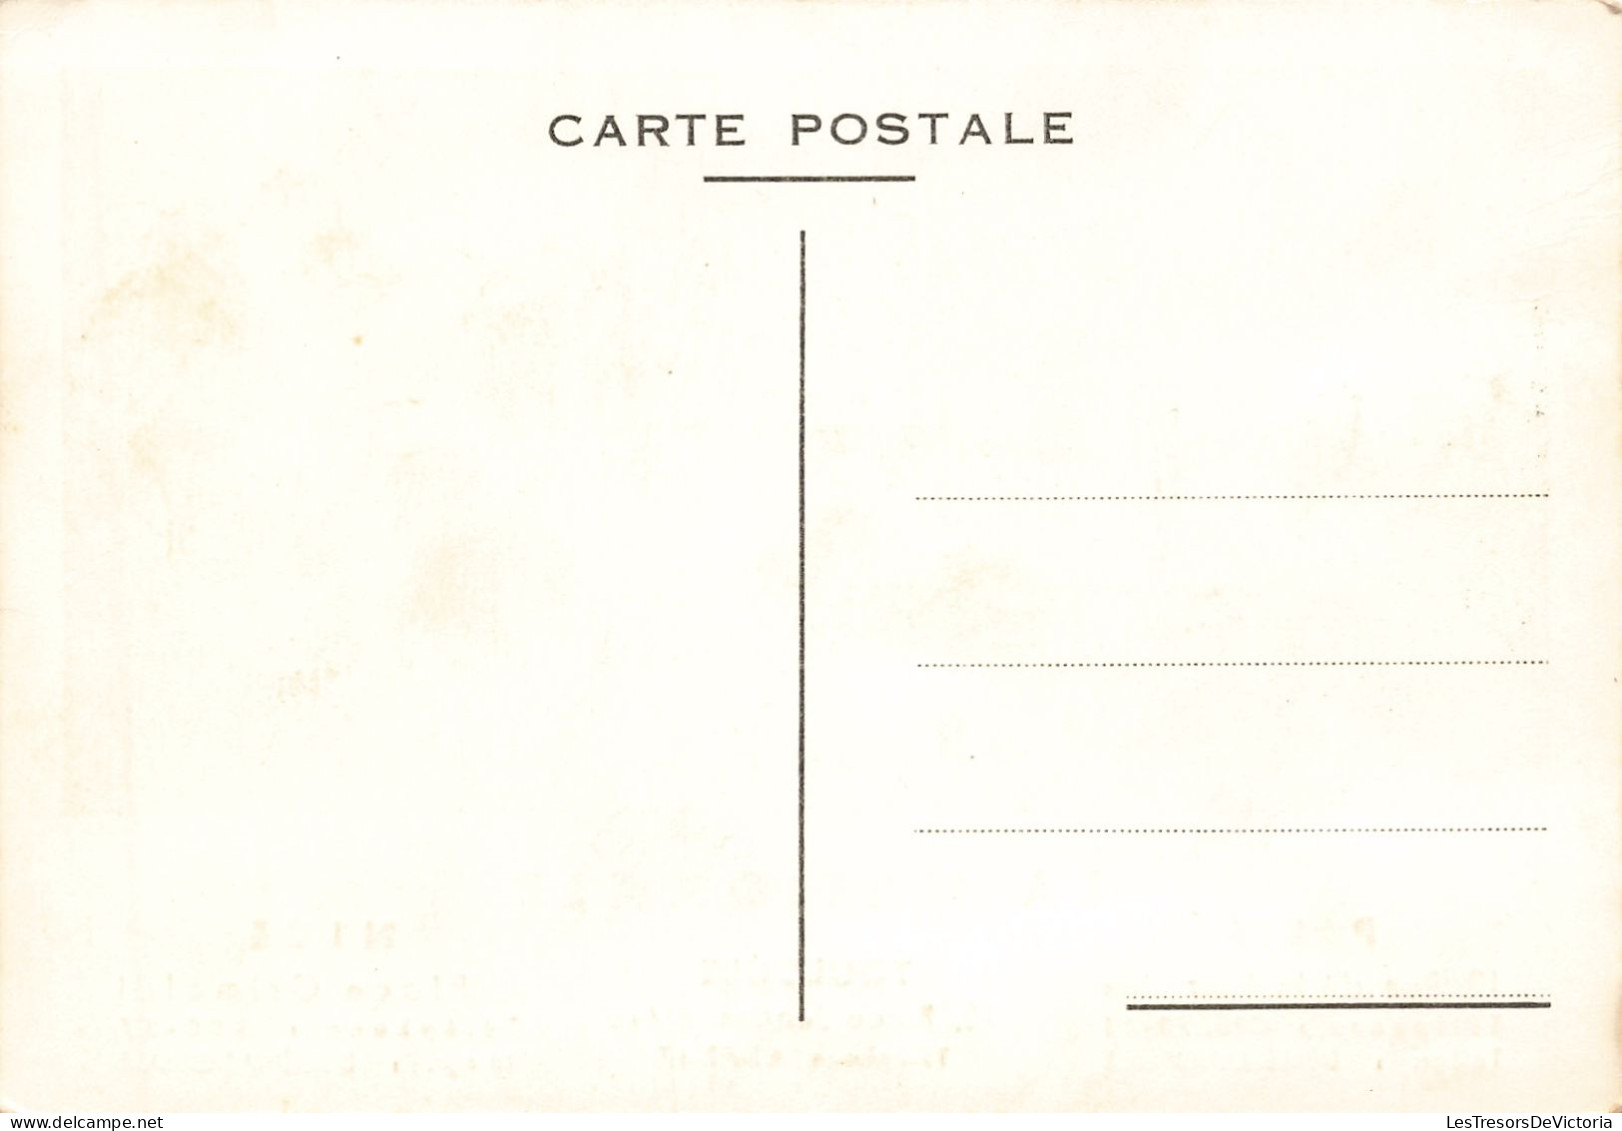 France - Paris - La Nationale - Déménagement A Longue Distance - Publicité -  Carte Postale Ancienne - Nahverkehr, Oberirdisch